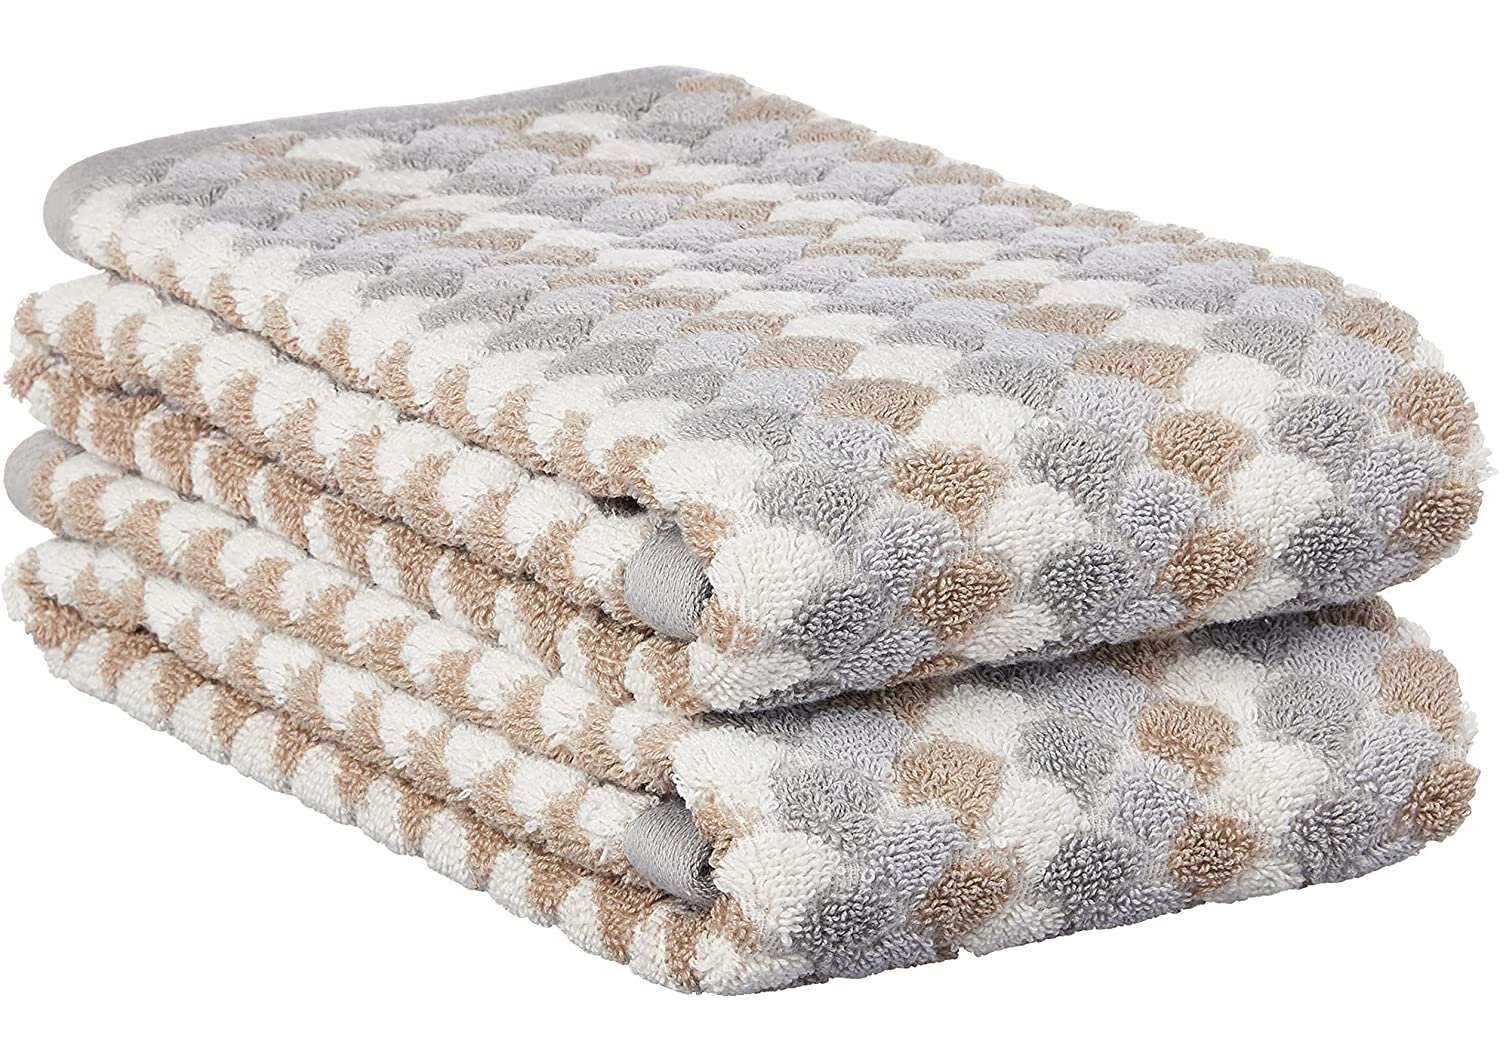 https://assets.wfcdn.com/im/00885046/compr-r85/1559/155929713/bisham-2-piece-cotton-hand-towel-set.jpg